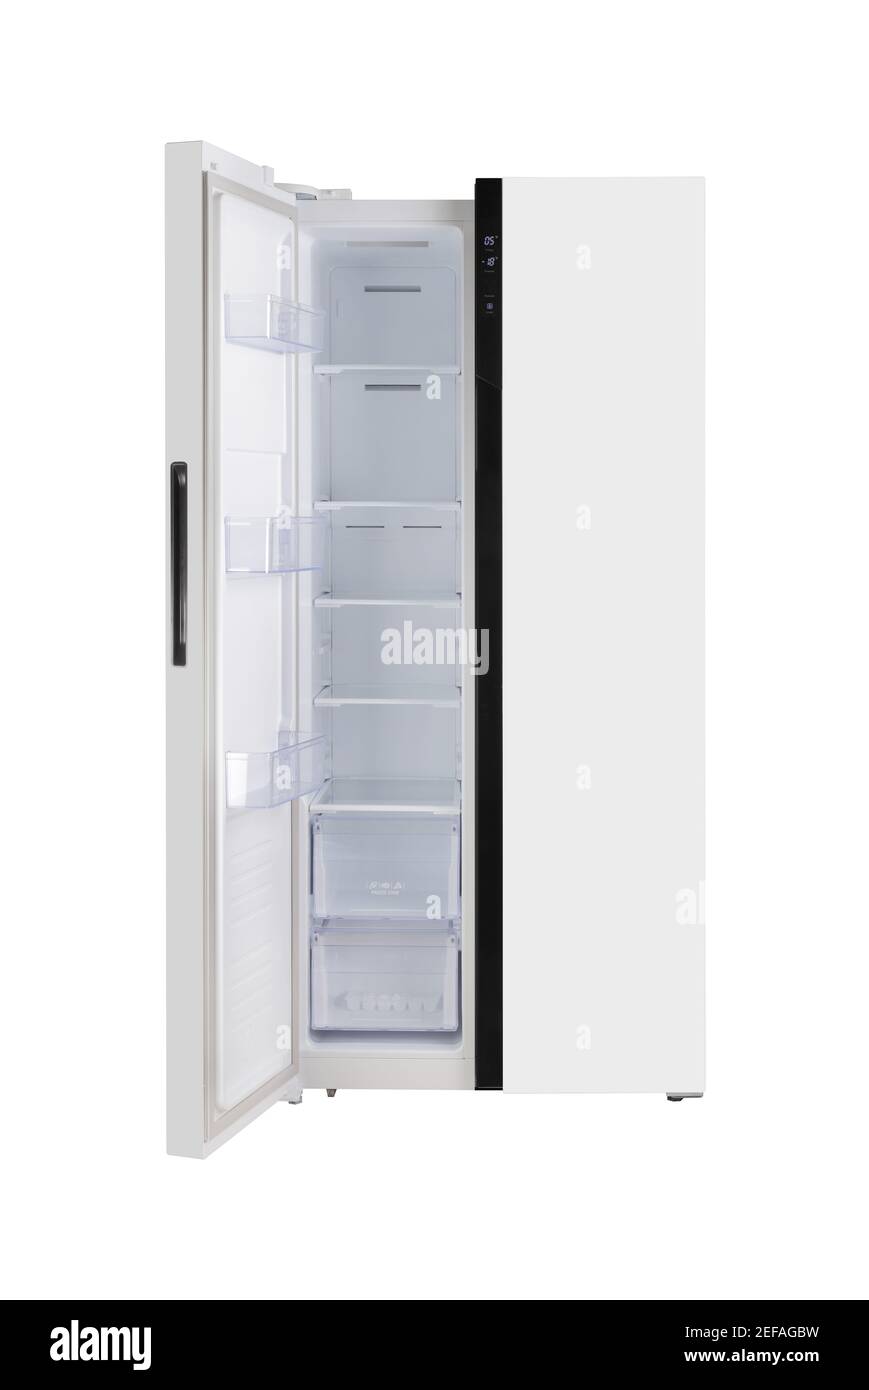 Hauptgerät – Vorderansicht weiß, Tür links offen, zweitürig, seitlich, Kühlschrank, auf weißem Hintergrund. Isoliert Stockfoto